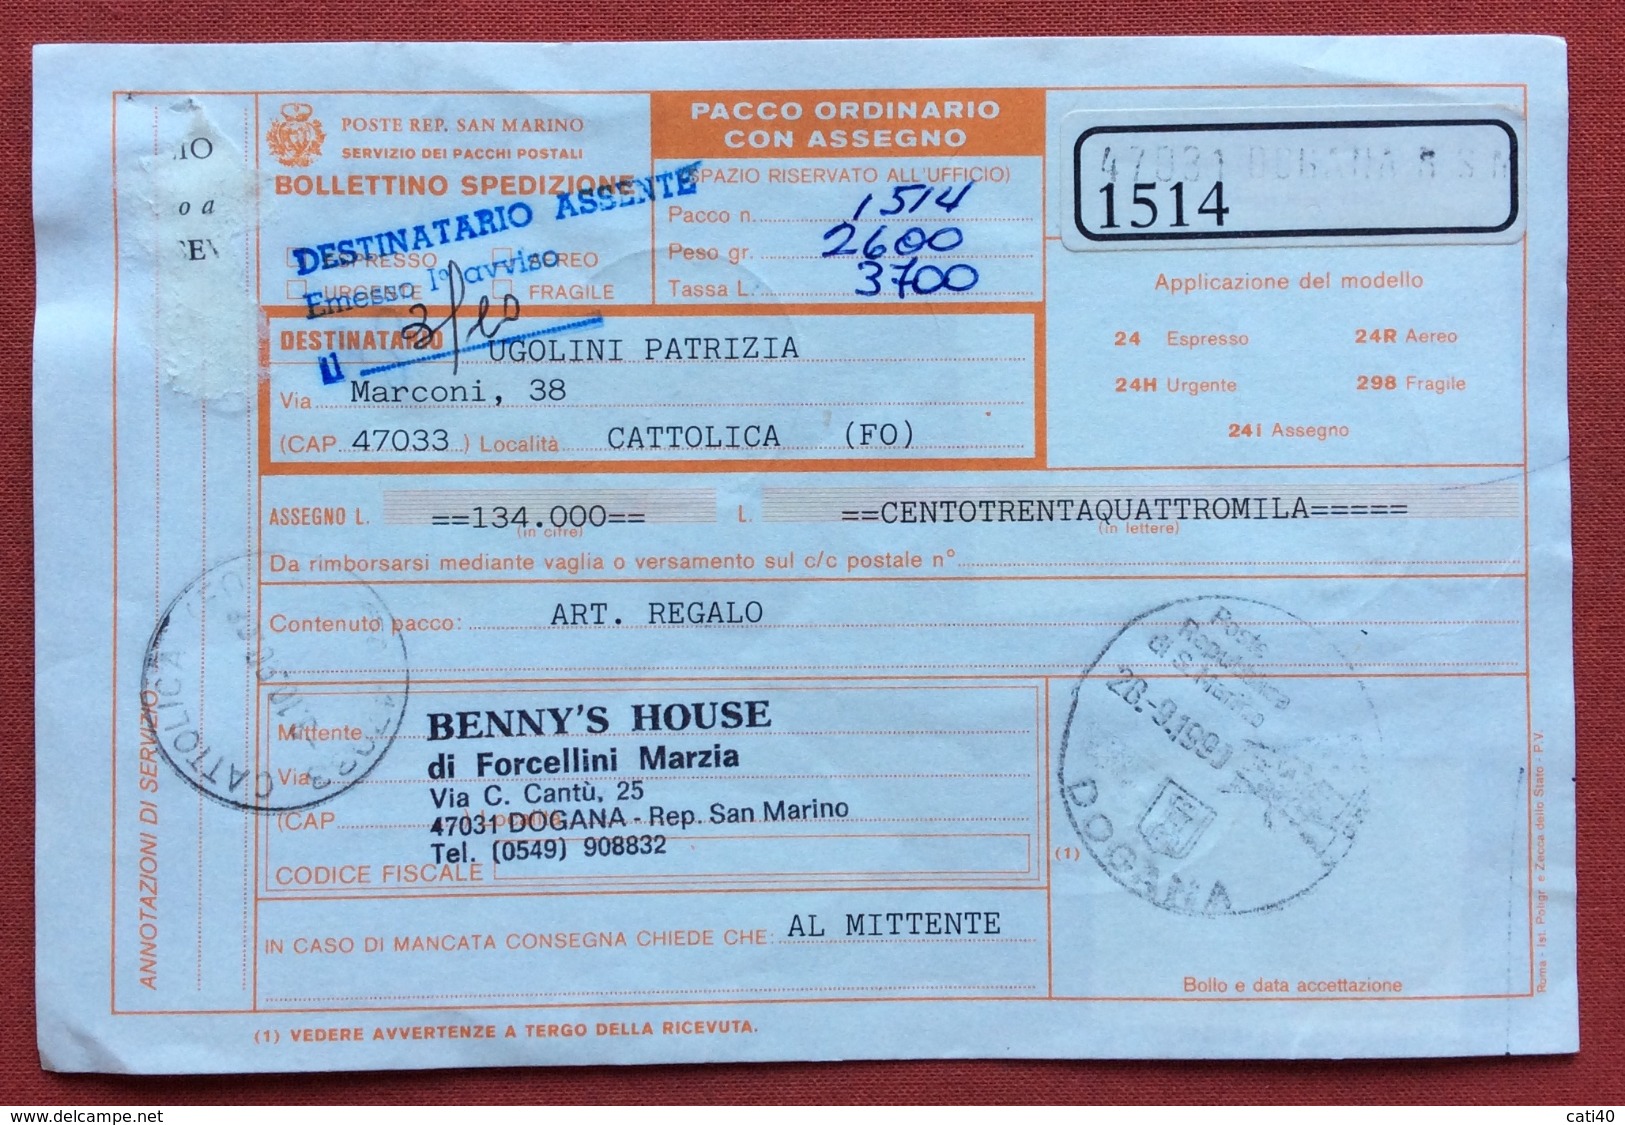 SAN MARINO BOLLETTINO PACCO ORDINARIO CON ASSEGNO  CON L.1500+1500+700  ANNULLO S.MARINO DOGANA 28/9/90 - Errors, Freaks & Oddities (EFO)